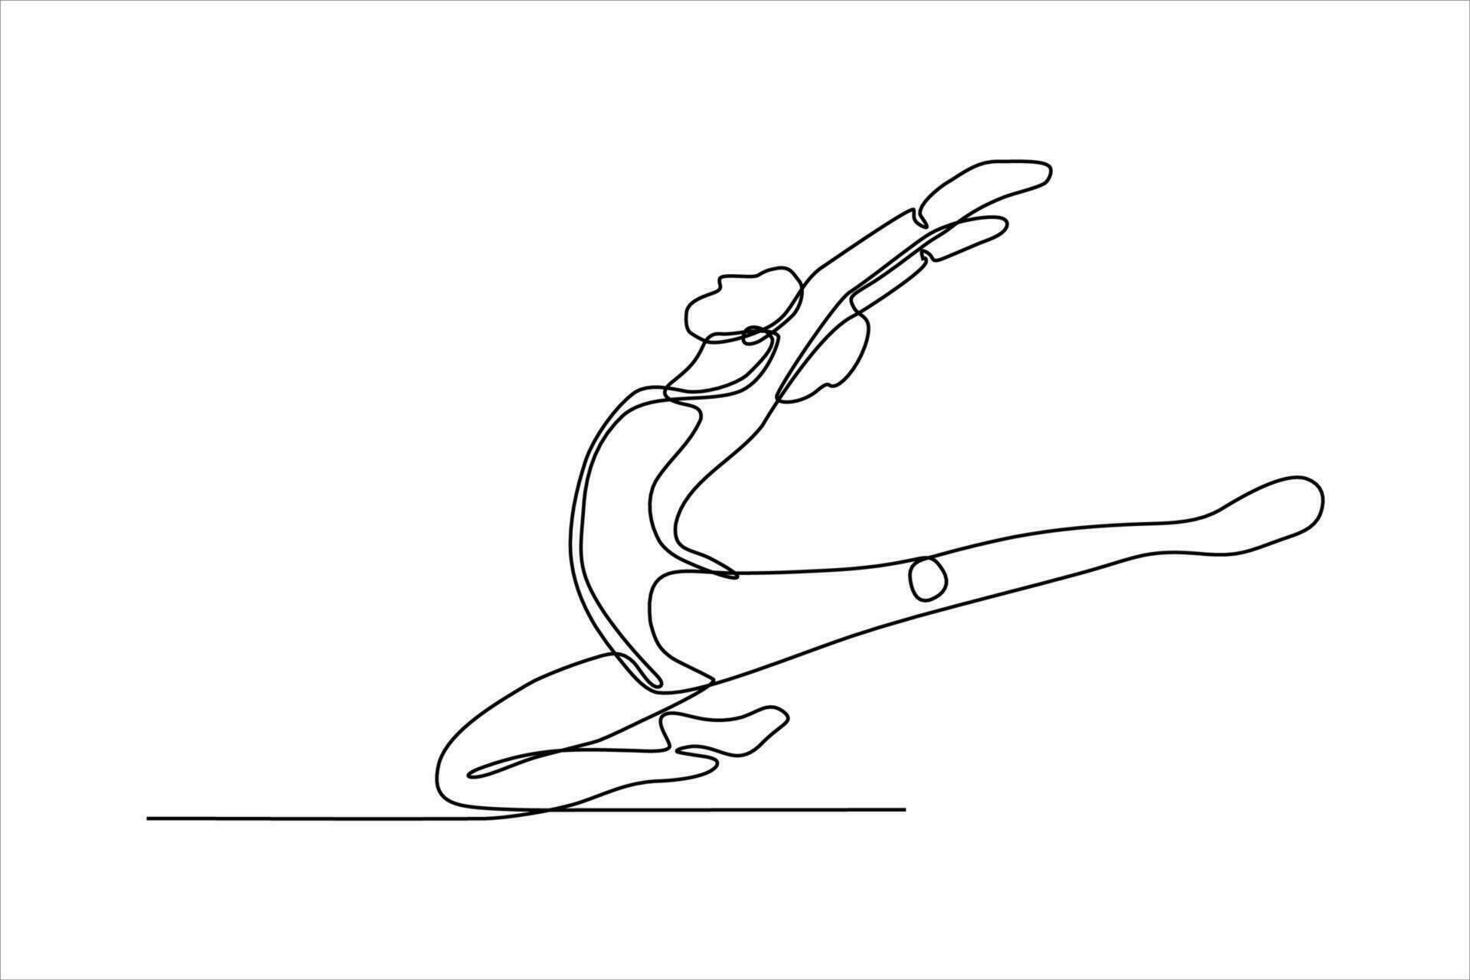 doorlopend lijn tekening van vrouw dansen ballet illustratie vector